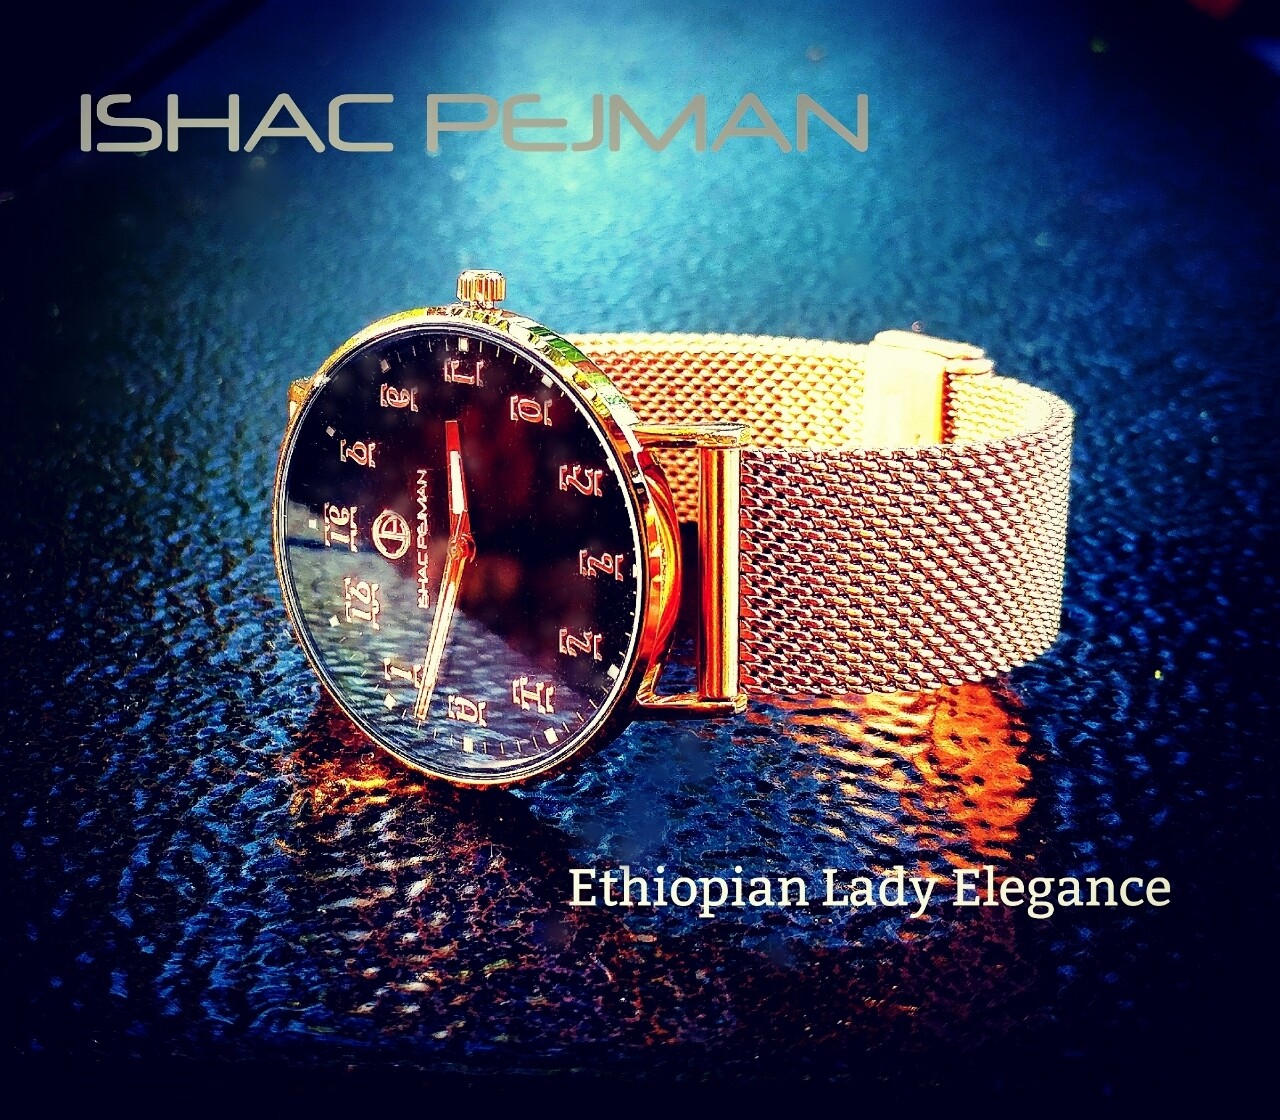 የሴቶች የግዕዝ ቁጥር ያለው ሰዓት  Ethiopian Lady Elegance Stainless steel Japan Quartz watch